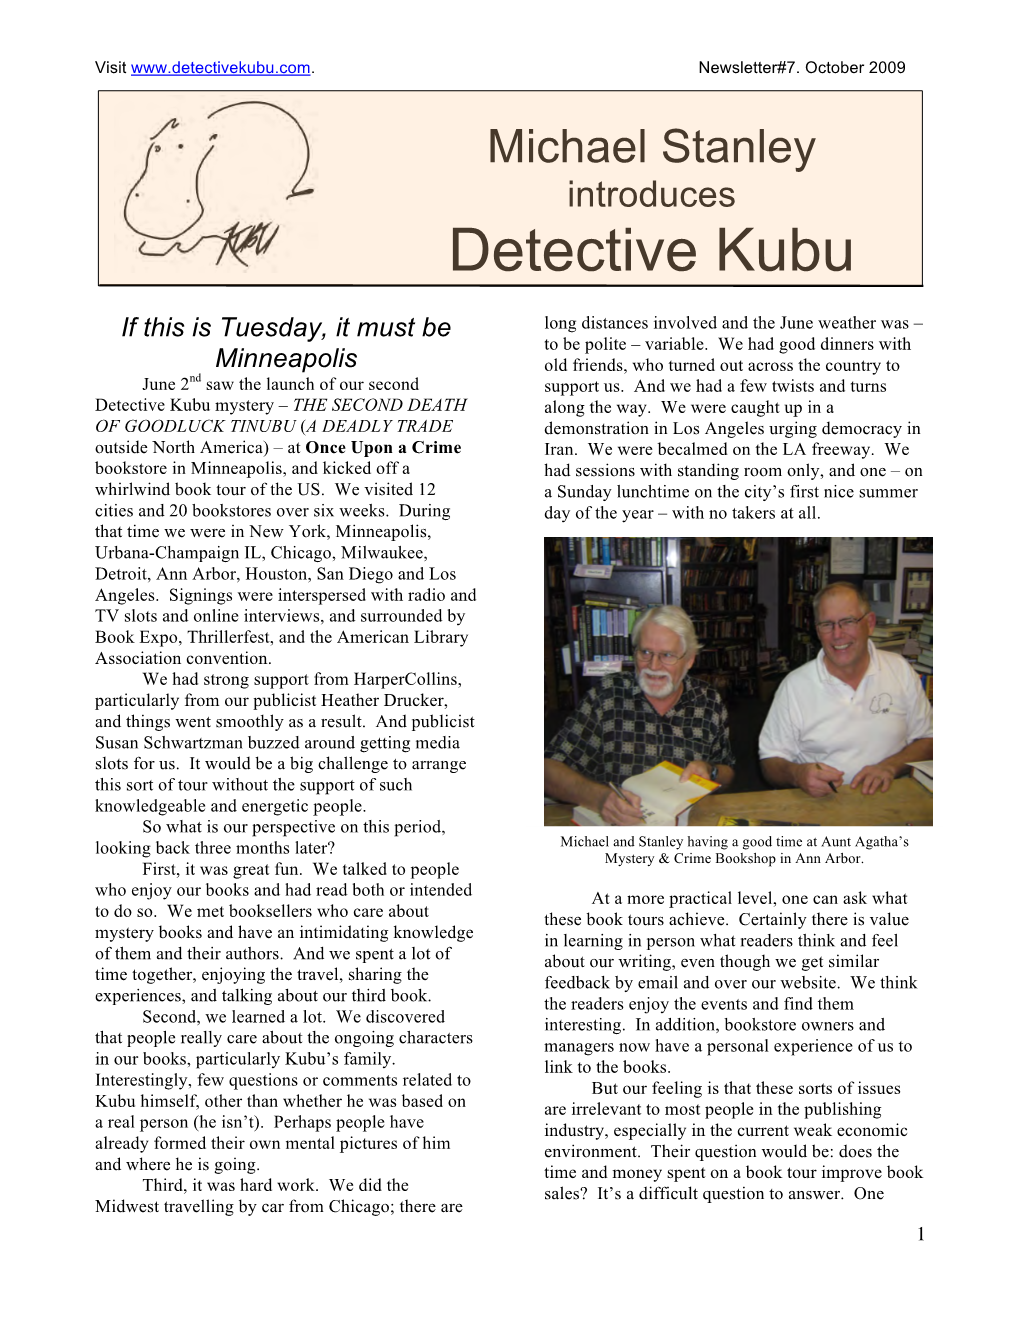 Detective Kubu